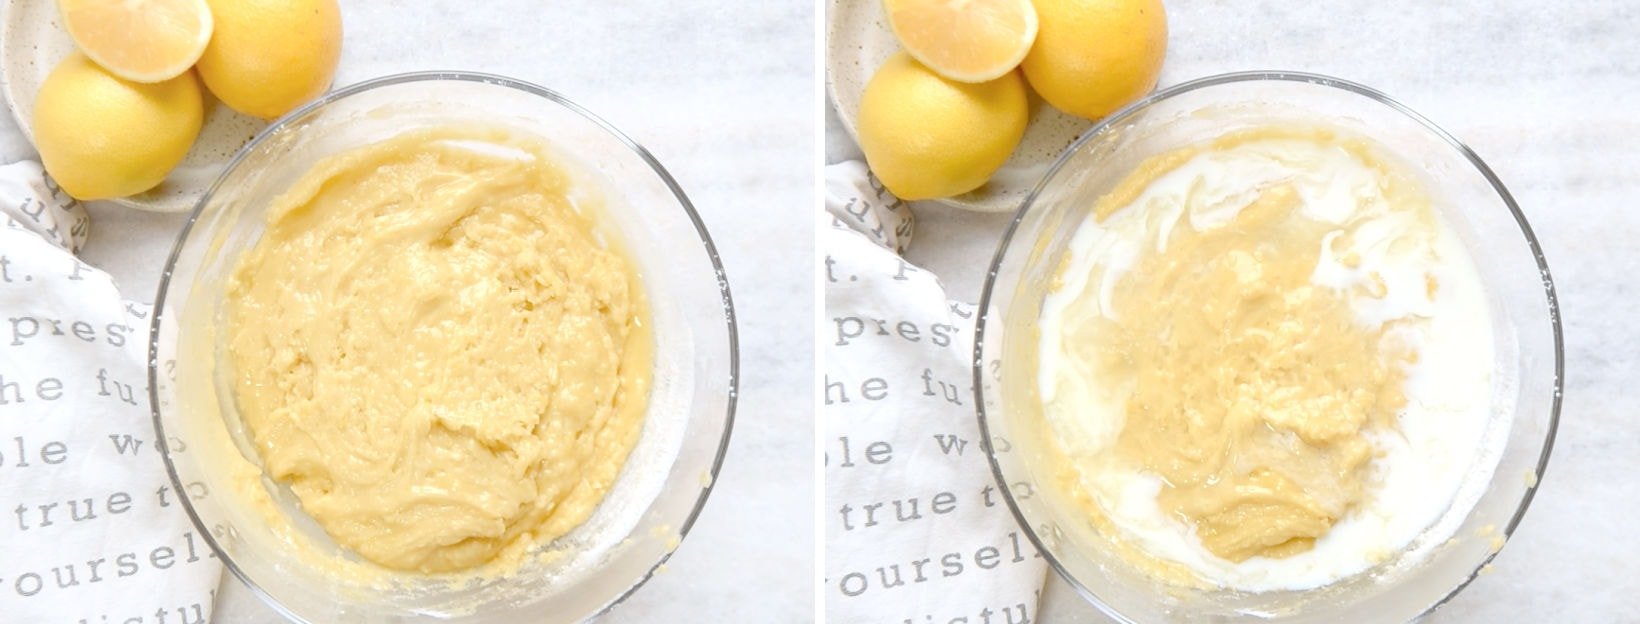 Make Lemon olive oil cake batter